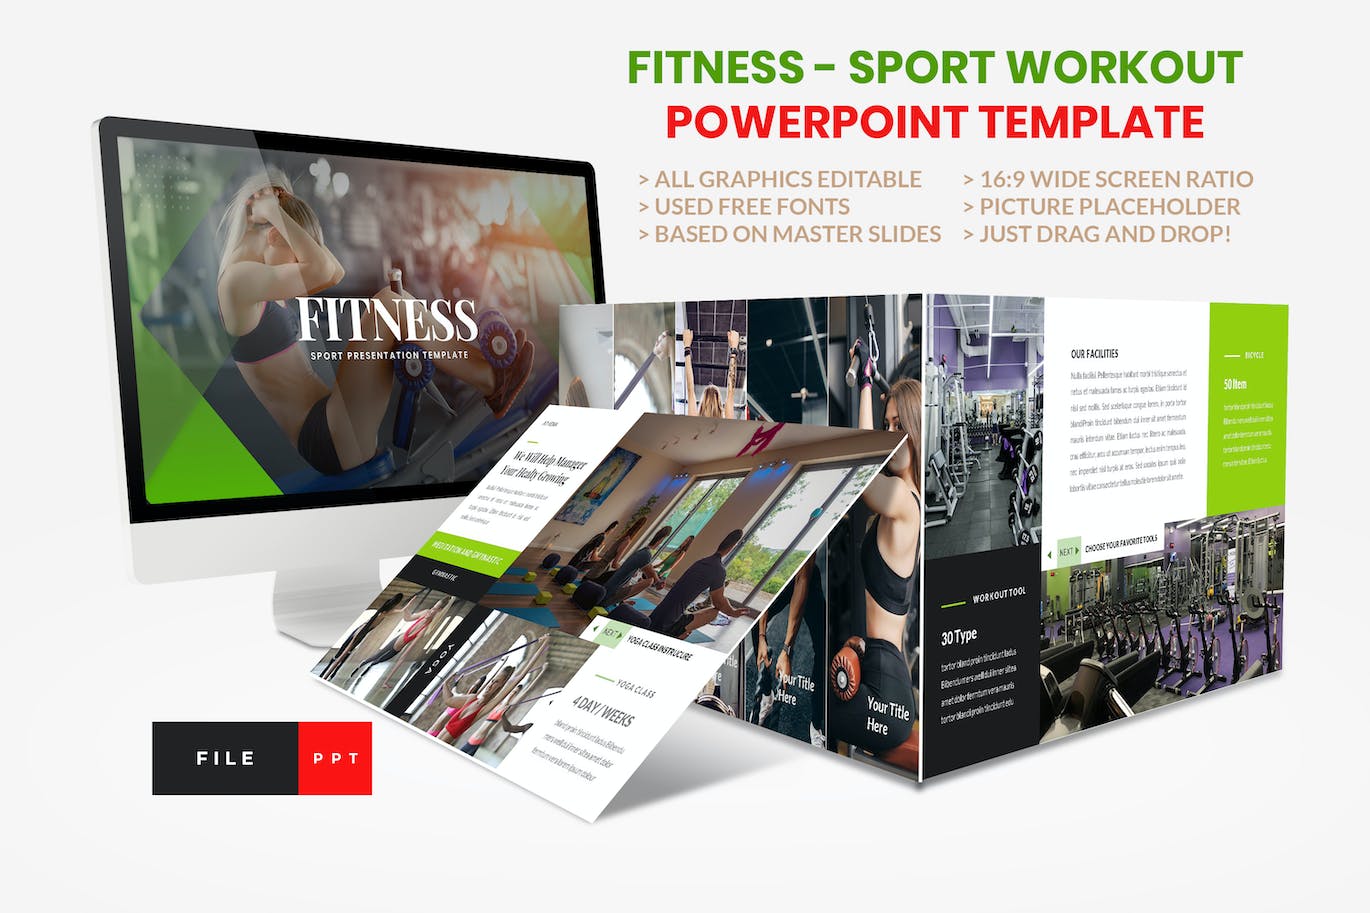 健身锻炼PPT幻灯片模板下载 Sport – Fitness Business Workout PowerPoint 幻灯图表 第1张